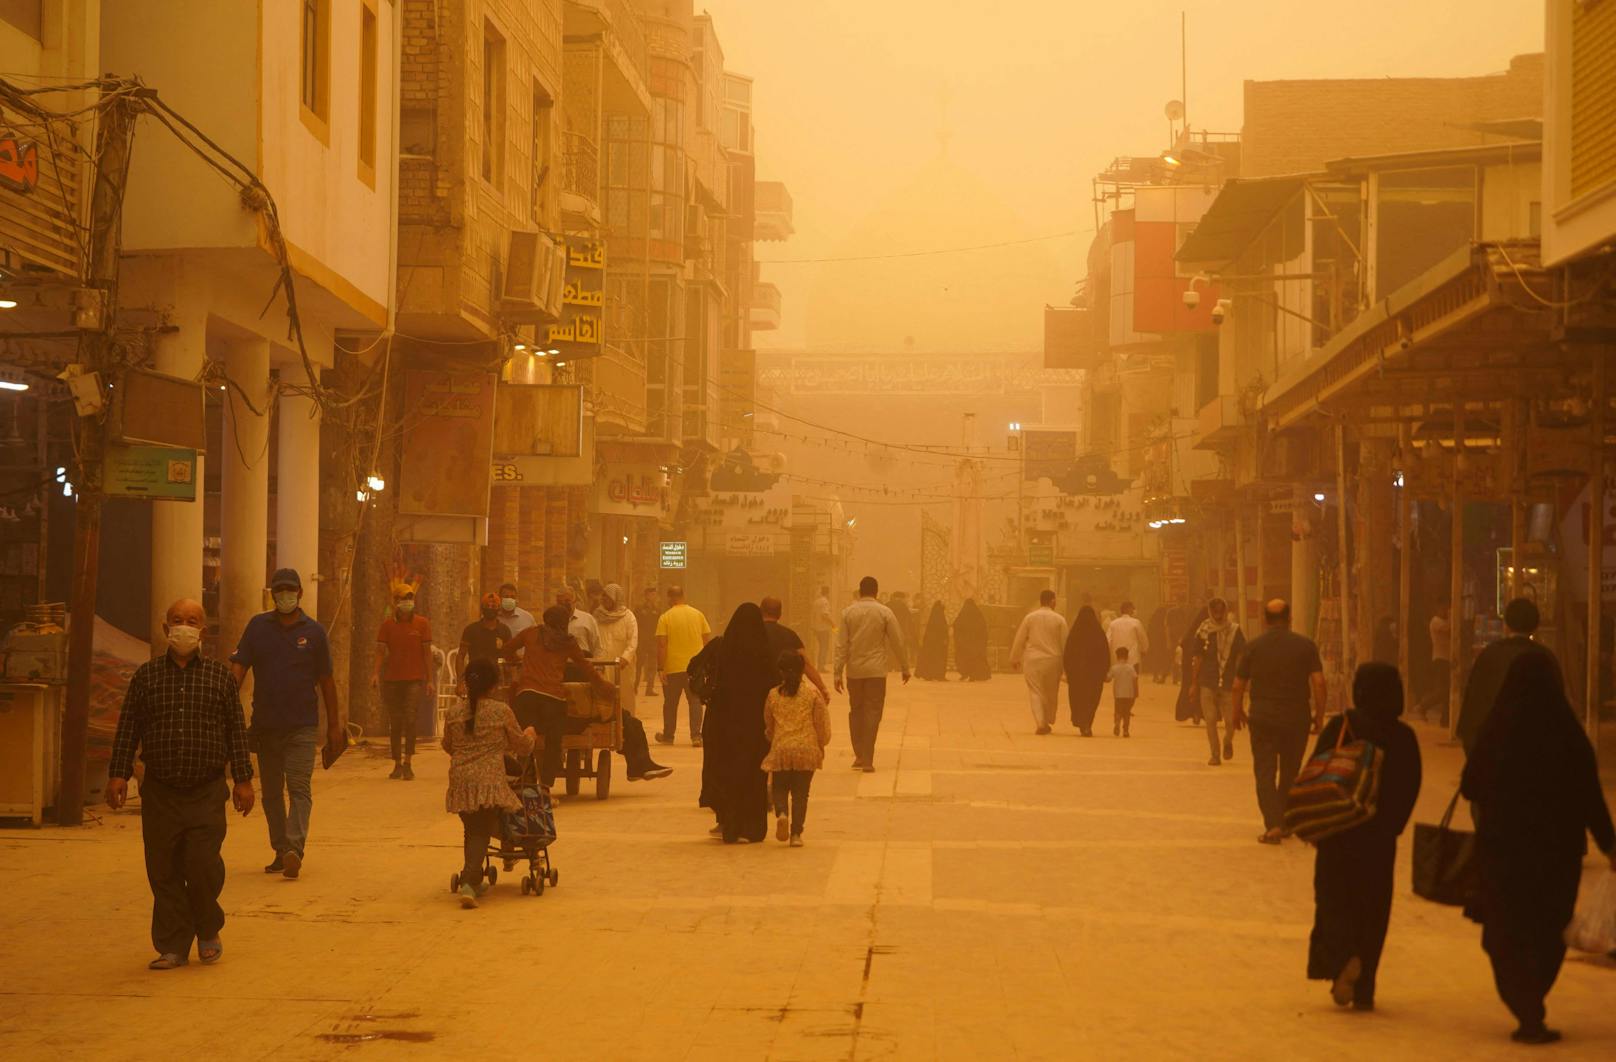 Ein Sandsturm taucht die irakische Hauptstadt in ein unwirkliches, oranges Licht.